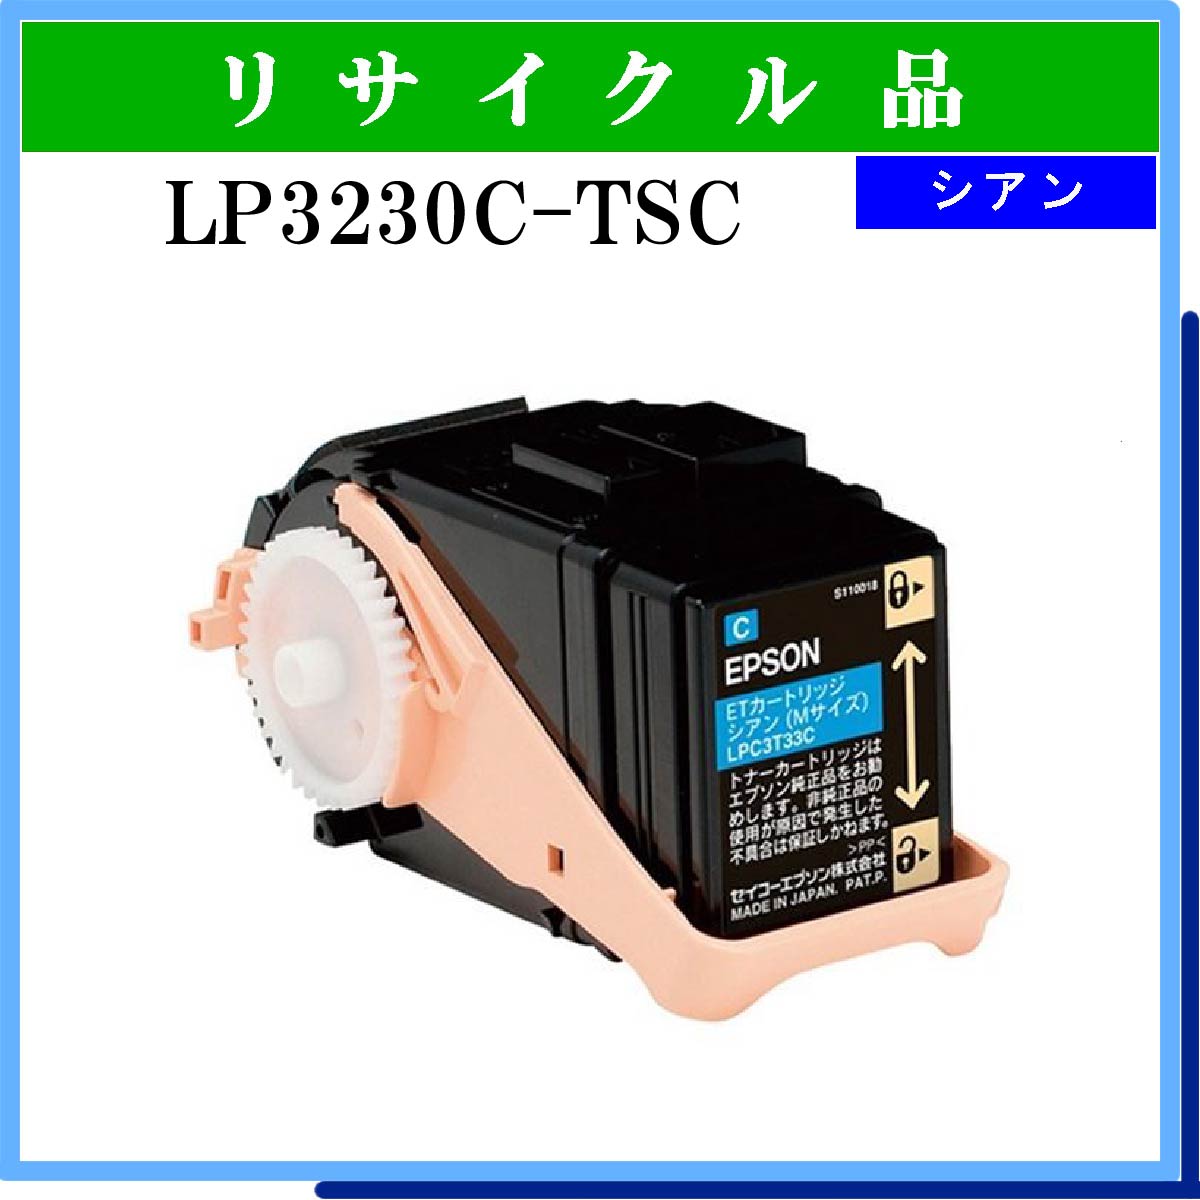 LP3230C-TSC